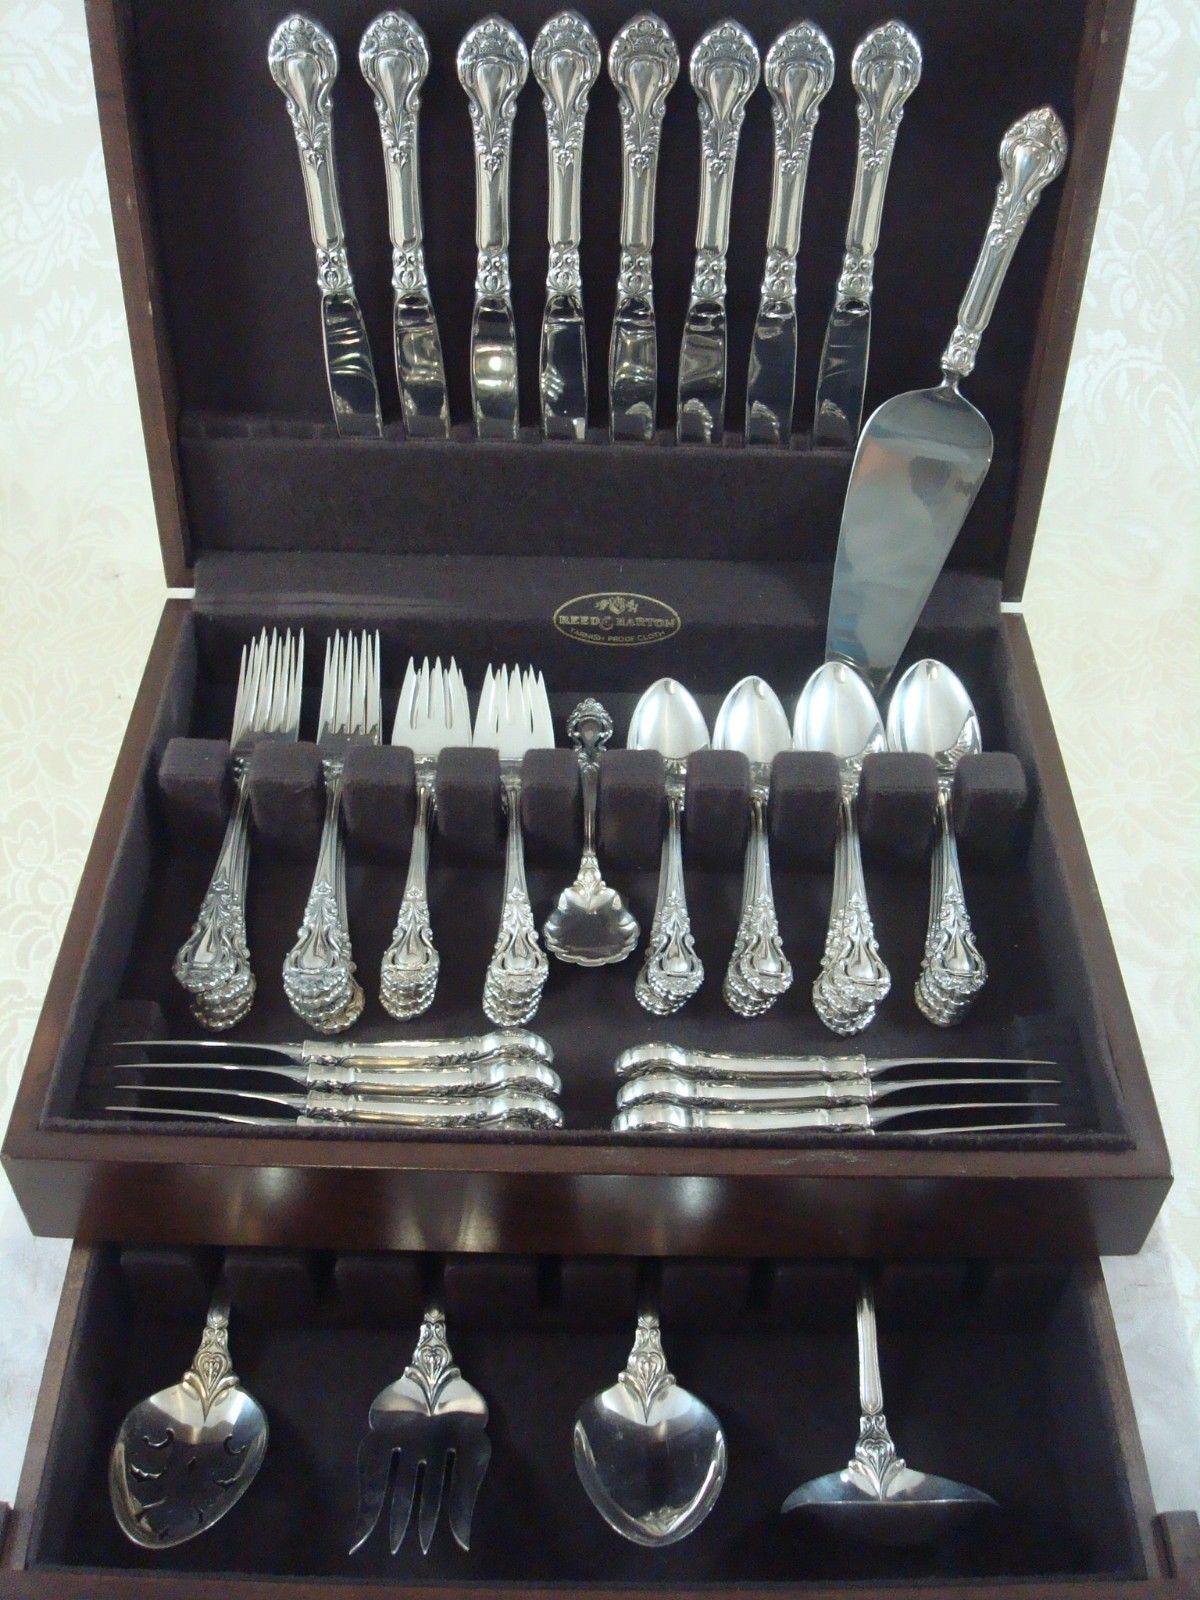 Hervorragende Royal Dynasty von Kirk Stieff Sterling Silber Besteck Set von 54 Stück, in ausgezeichnetem Zustand. Dieses verschnörkelte, schöne Muster ist gut verarbeitet und schwer. Dieses Set enthält:

Acht Messer, 9 1/4